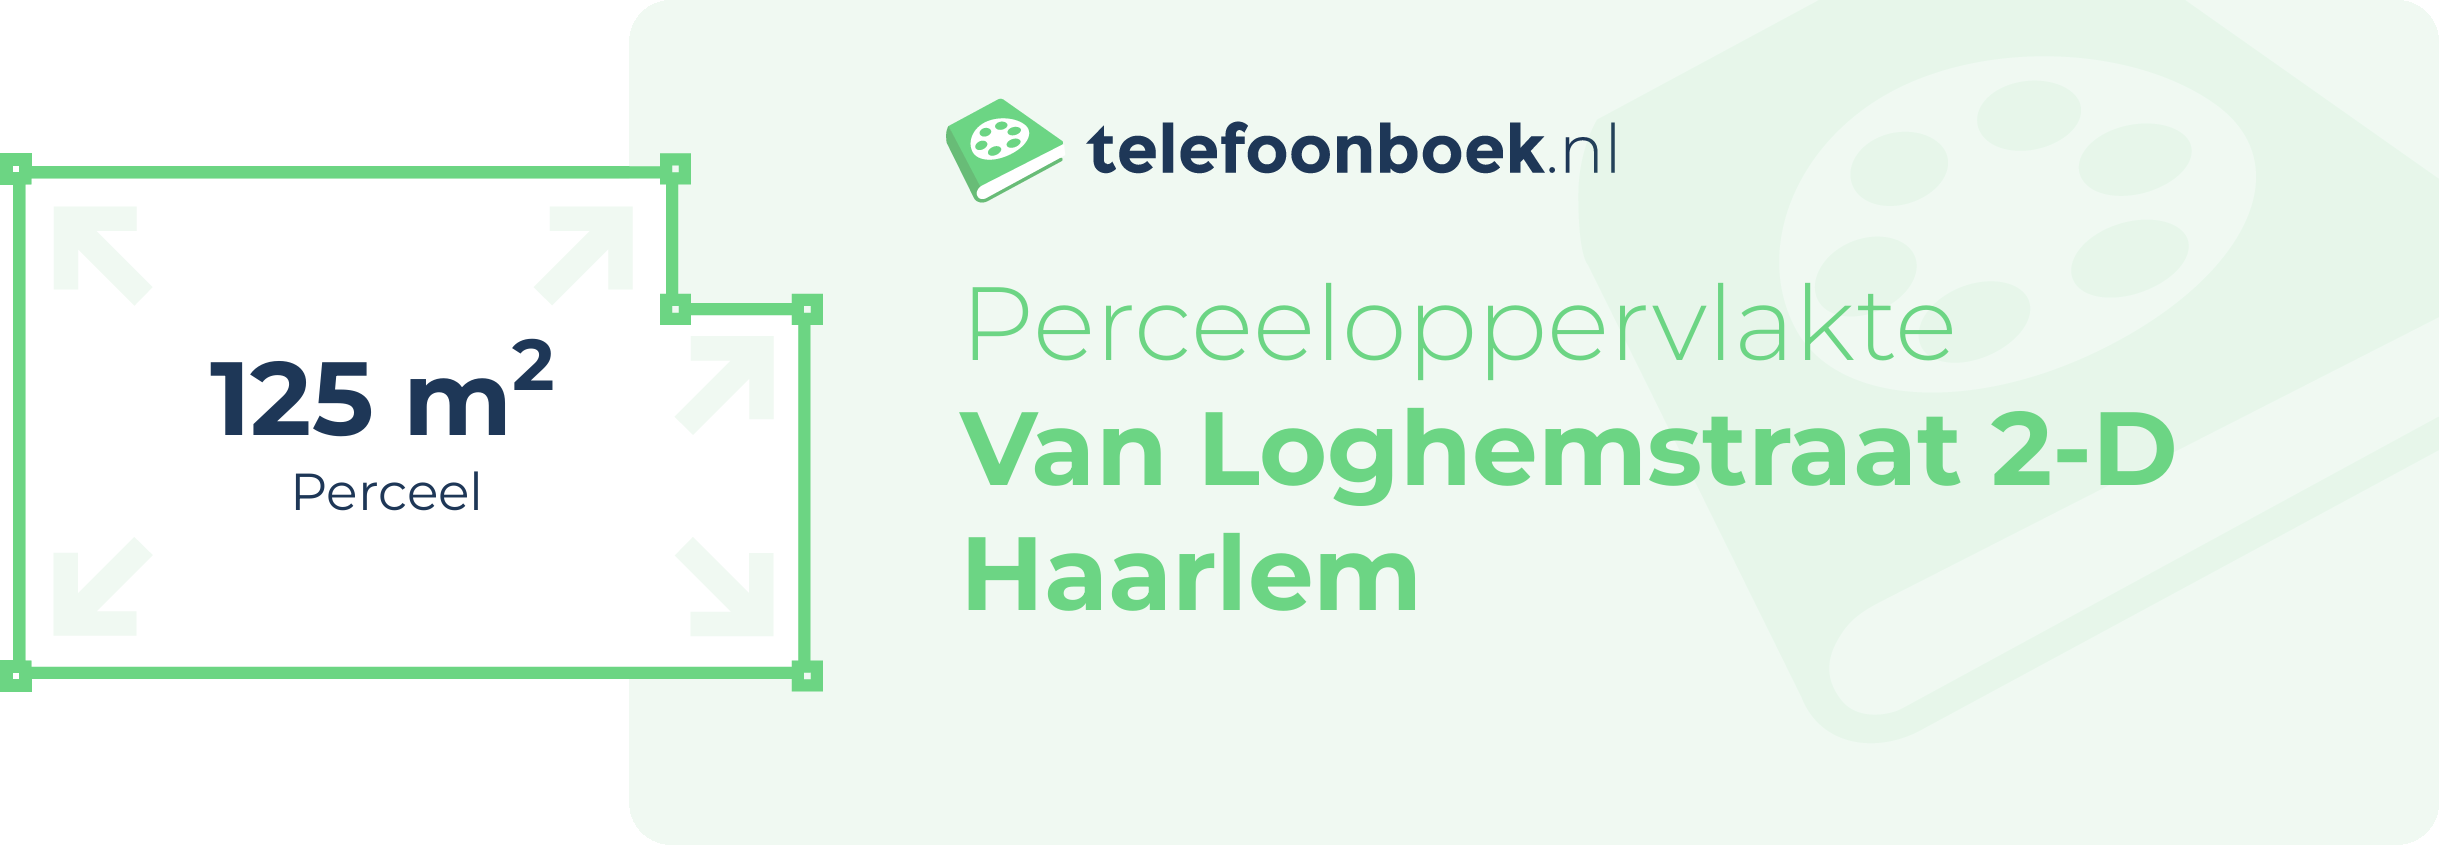 Perceeloppervlakte Van Loghemstraat 2-D Haarlem